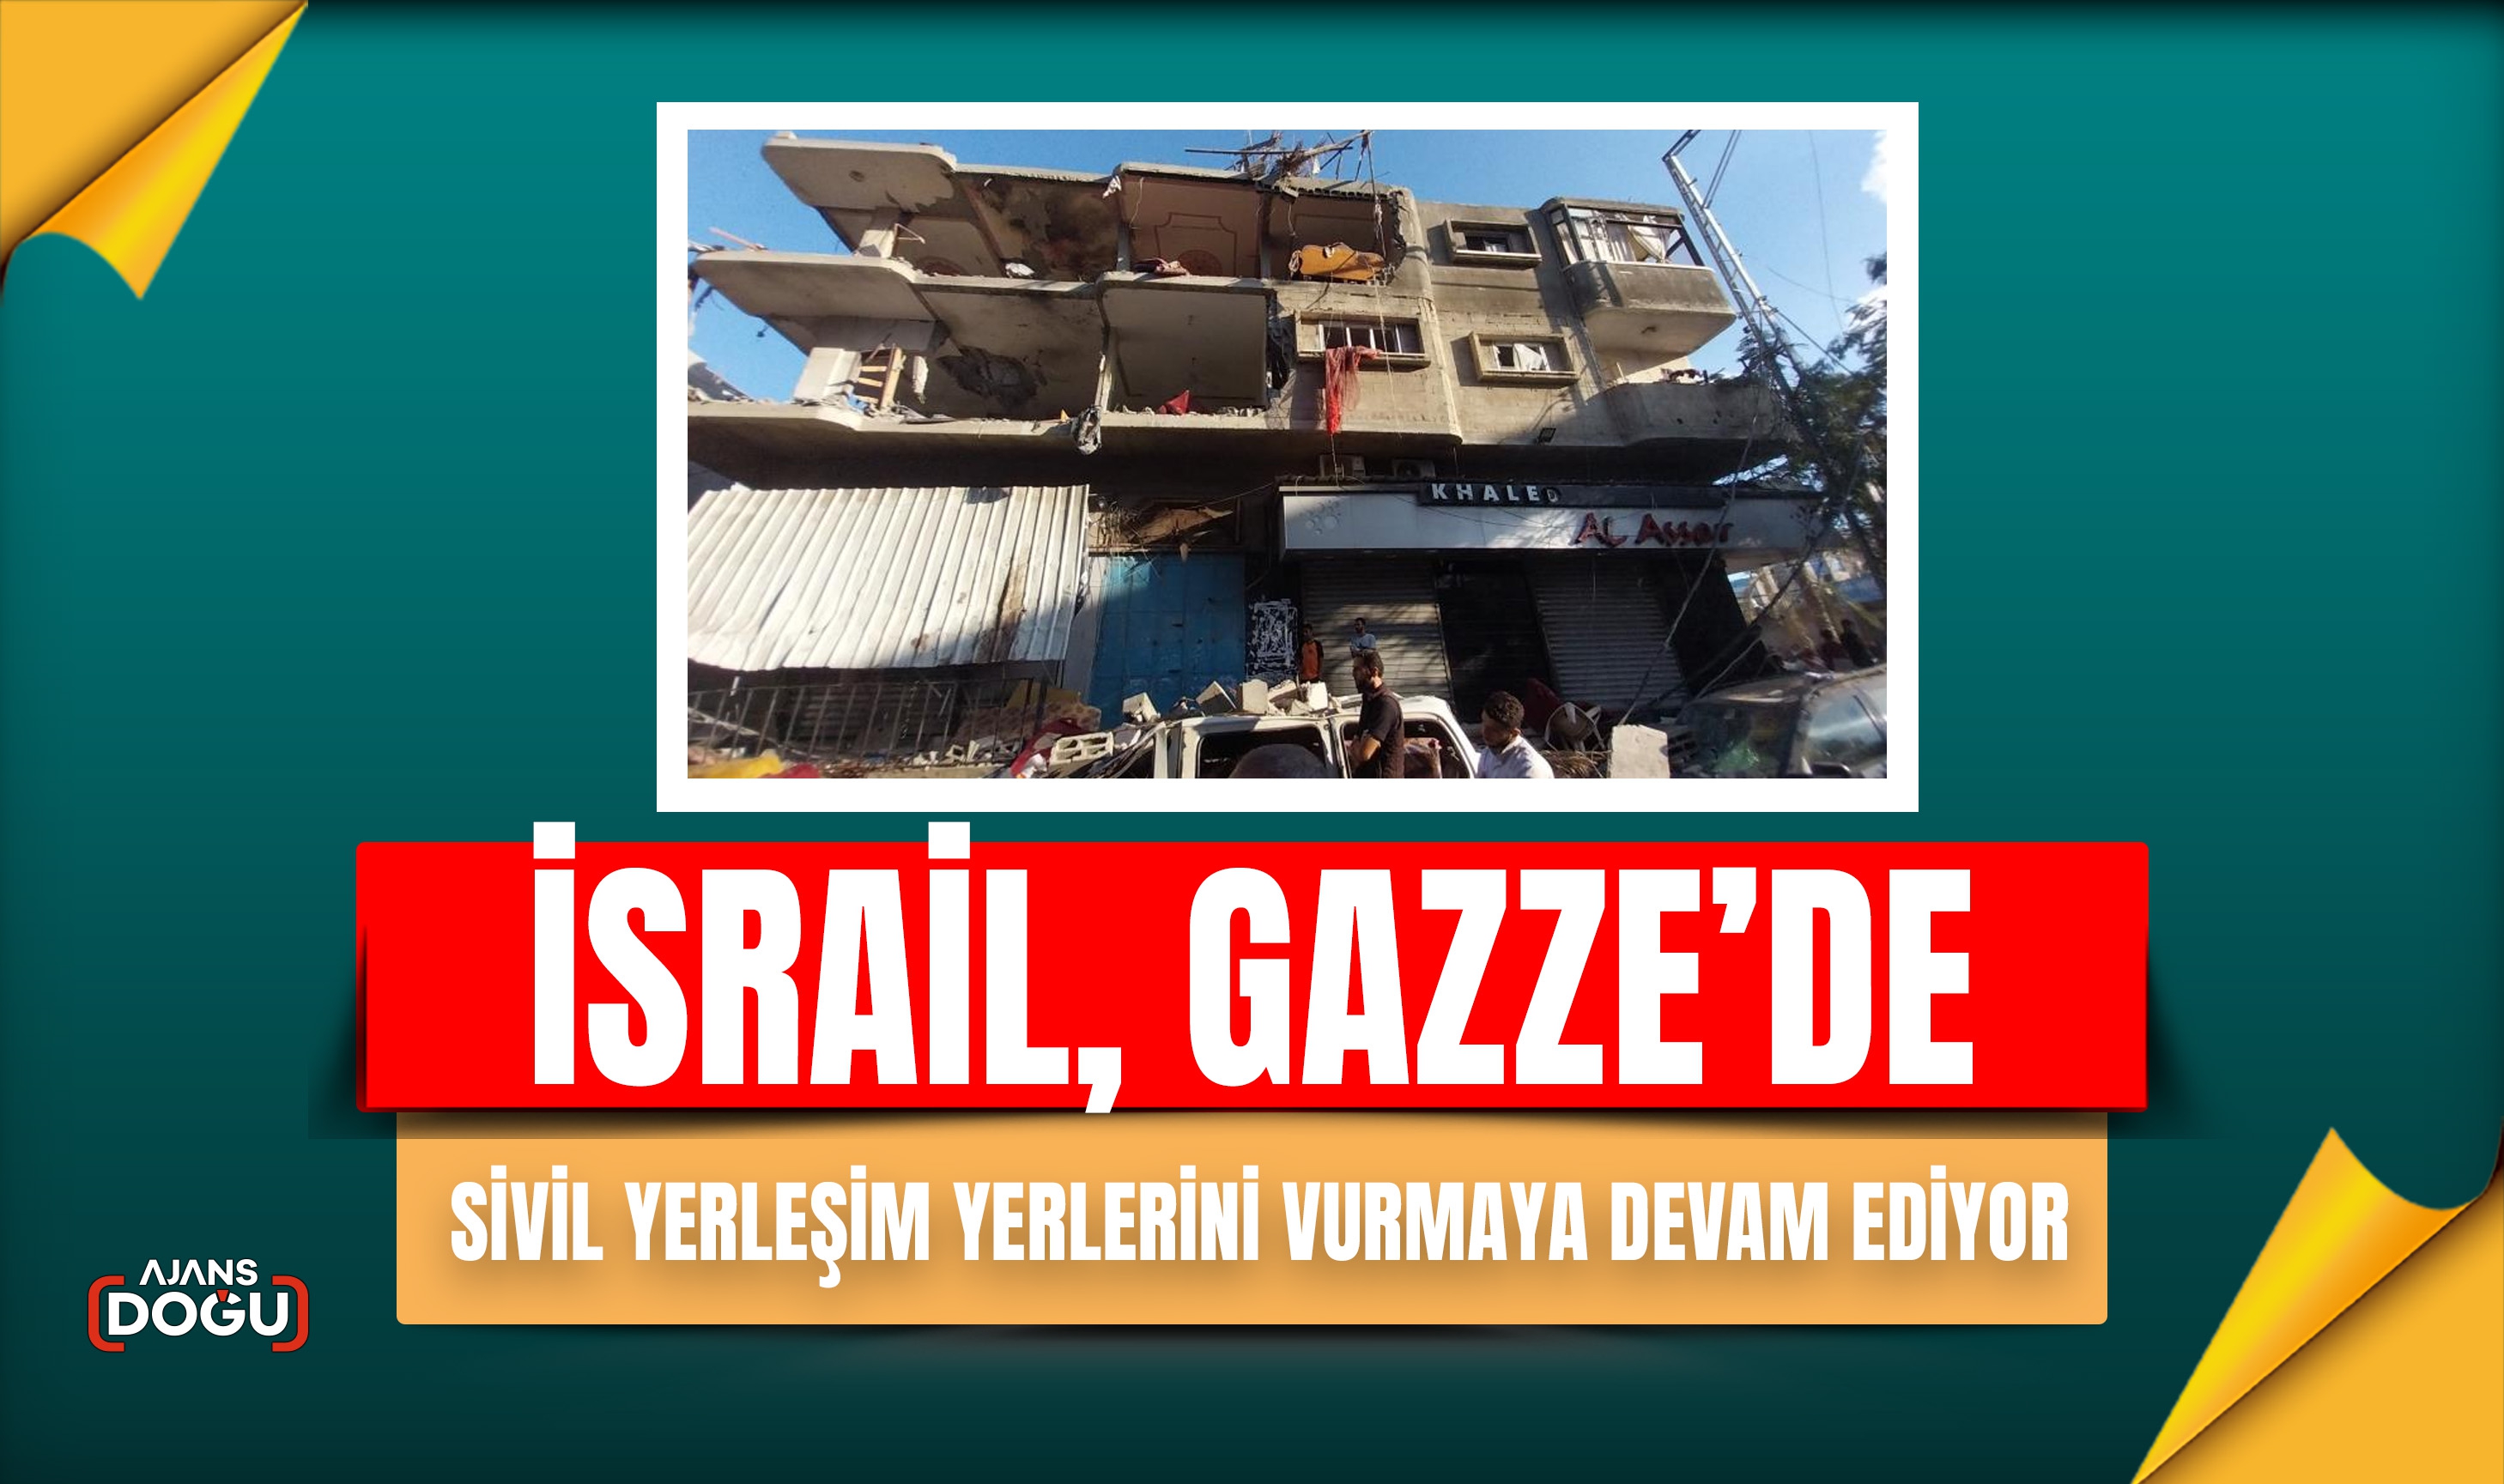 İsrail, Gazze’de sivil yerleşim yerlerini vurmaya devam ediyor